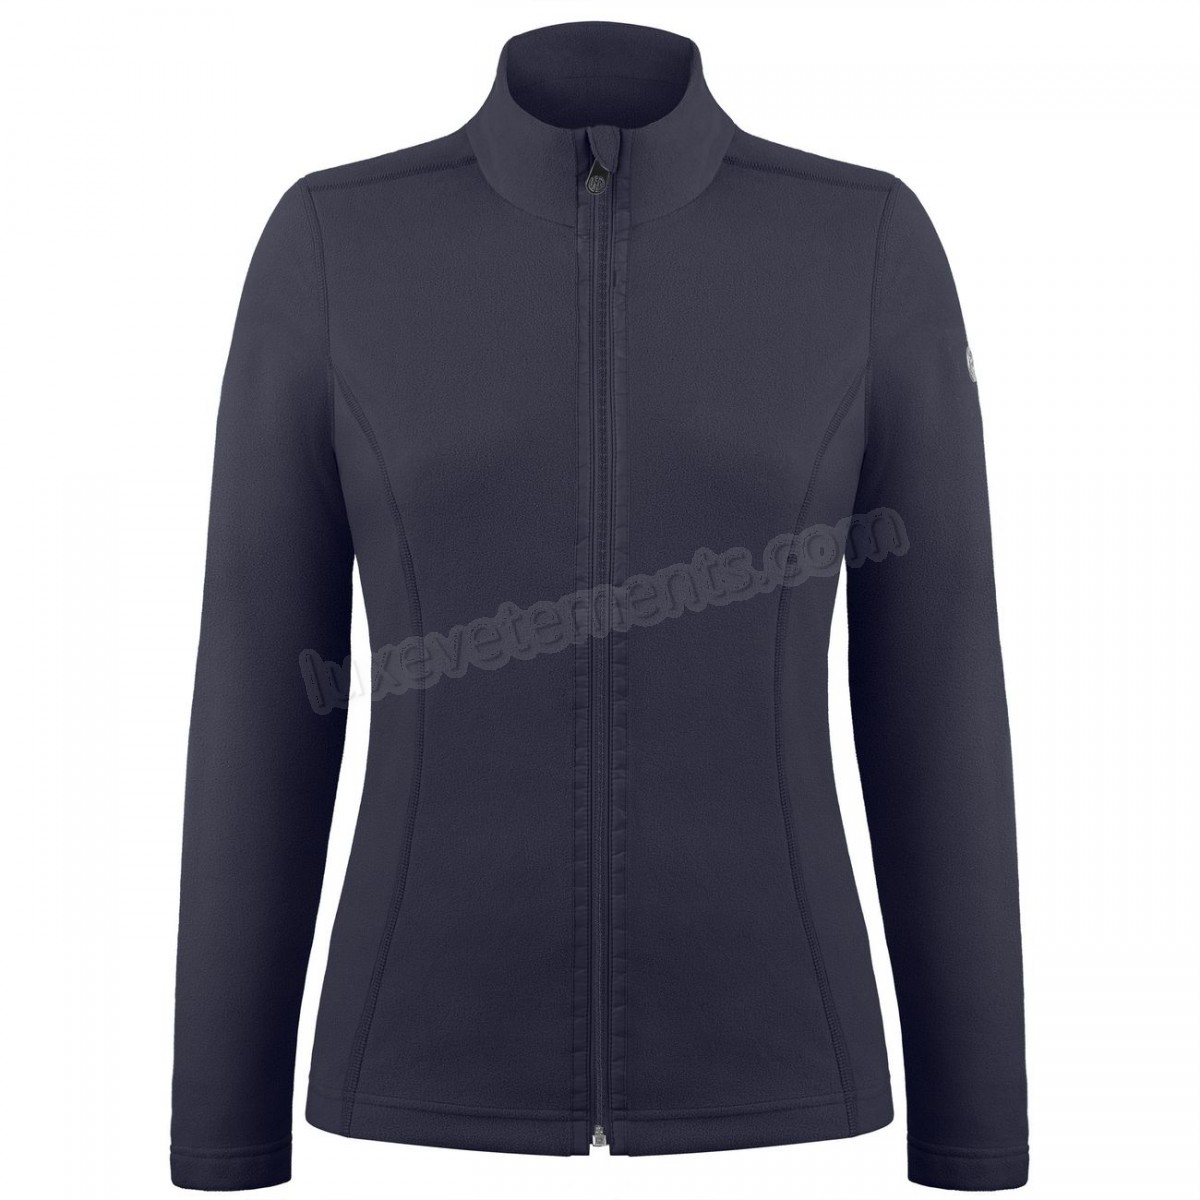 Poivre Blanc-Sports d'hiver femme POIVRE BLANC Veste Polaire Poivre Blanc Fleece Jacket 1500 Gothic Blue 4 Femme Vente en ligne - -0